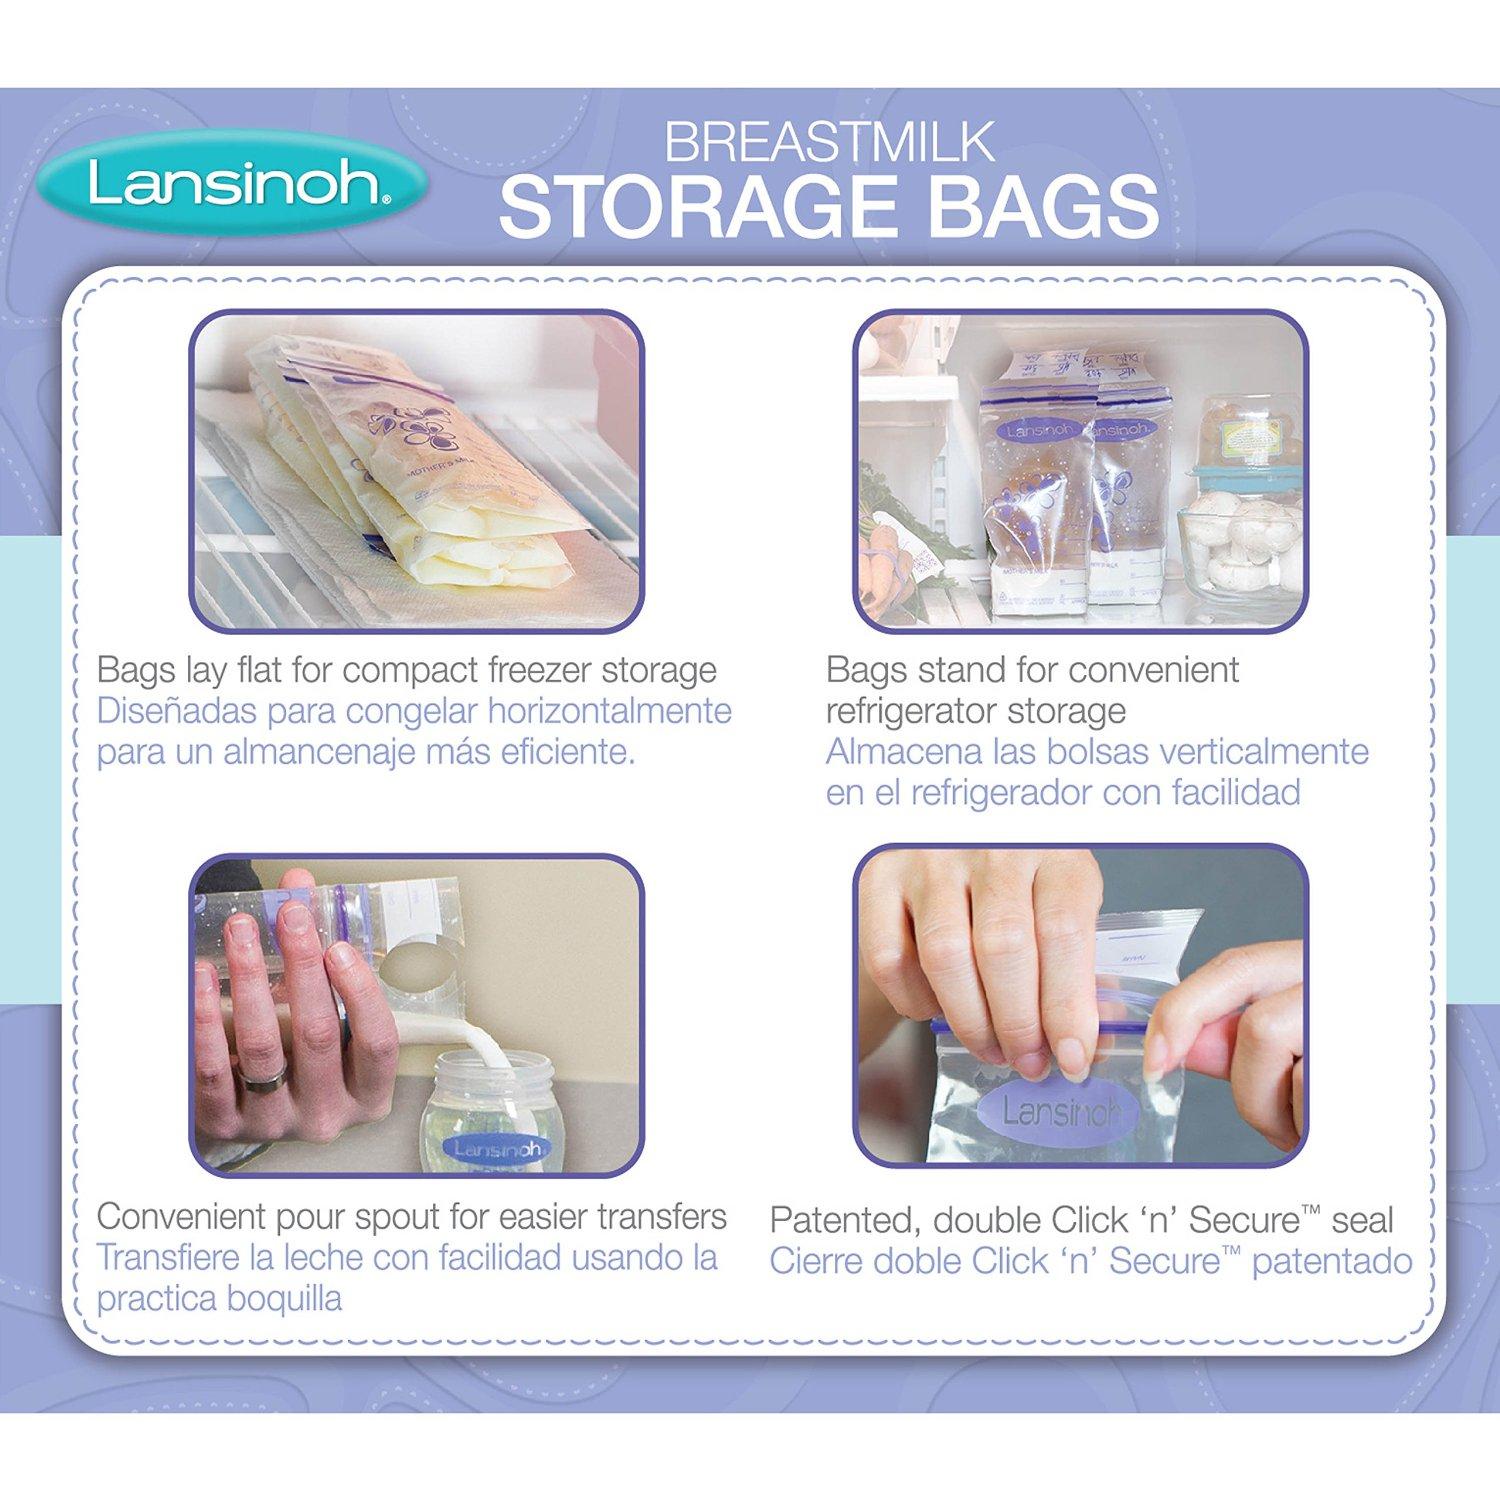 storage bags lansinoh